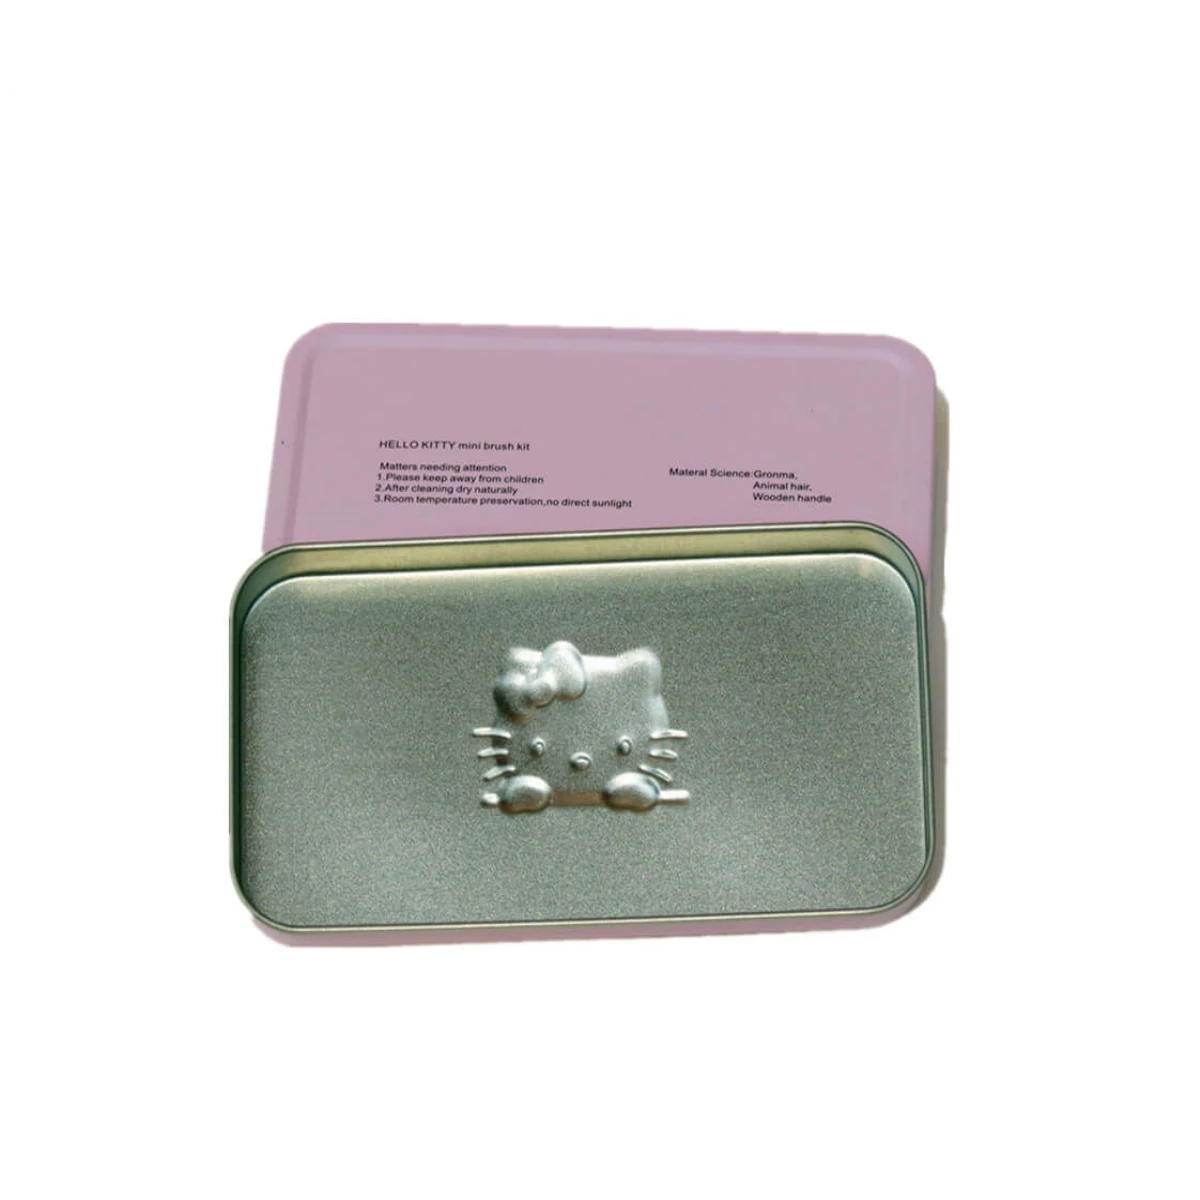 China cosmetic brush tin box Manufacturers, Factory - Buy cosmetic brush tin box at Good Price - Haohang